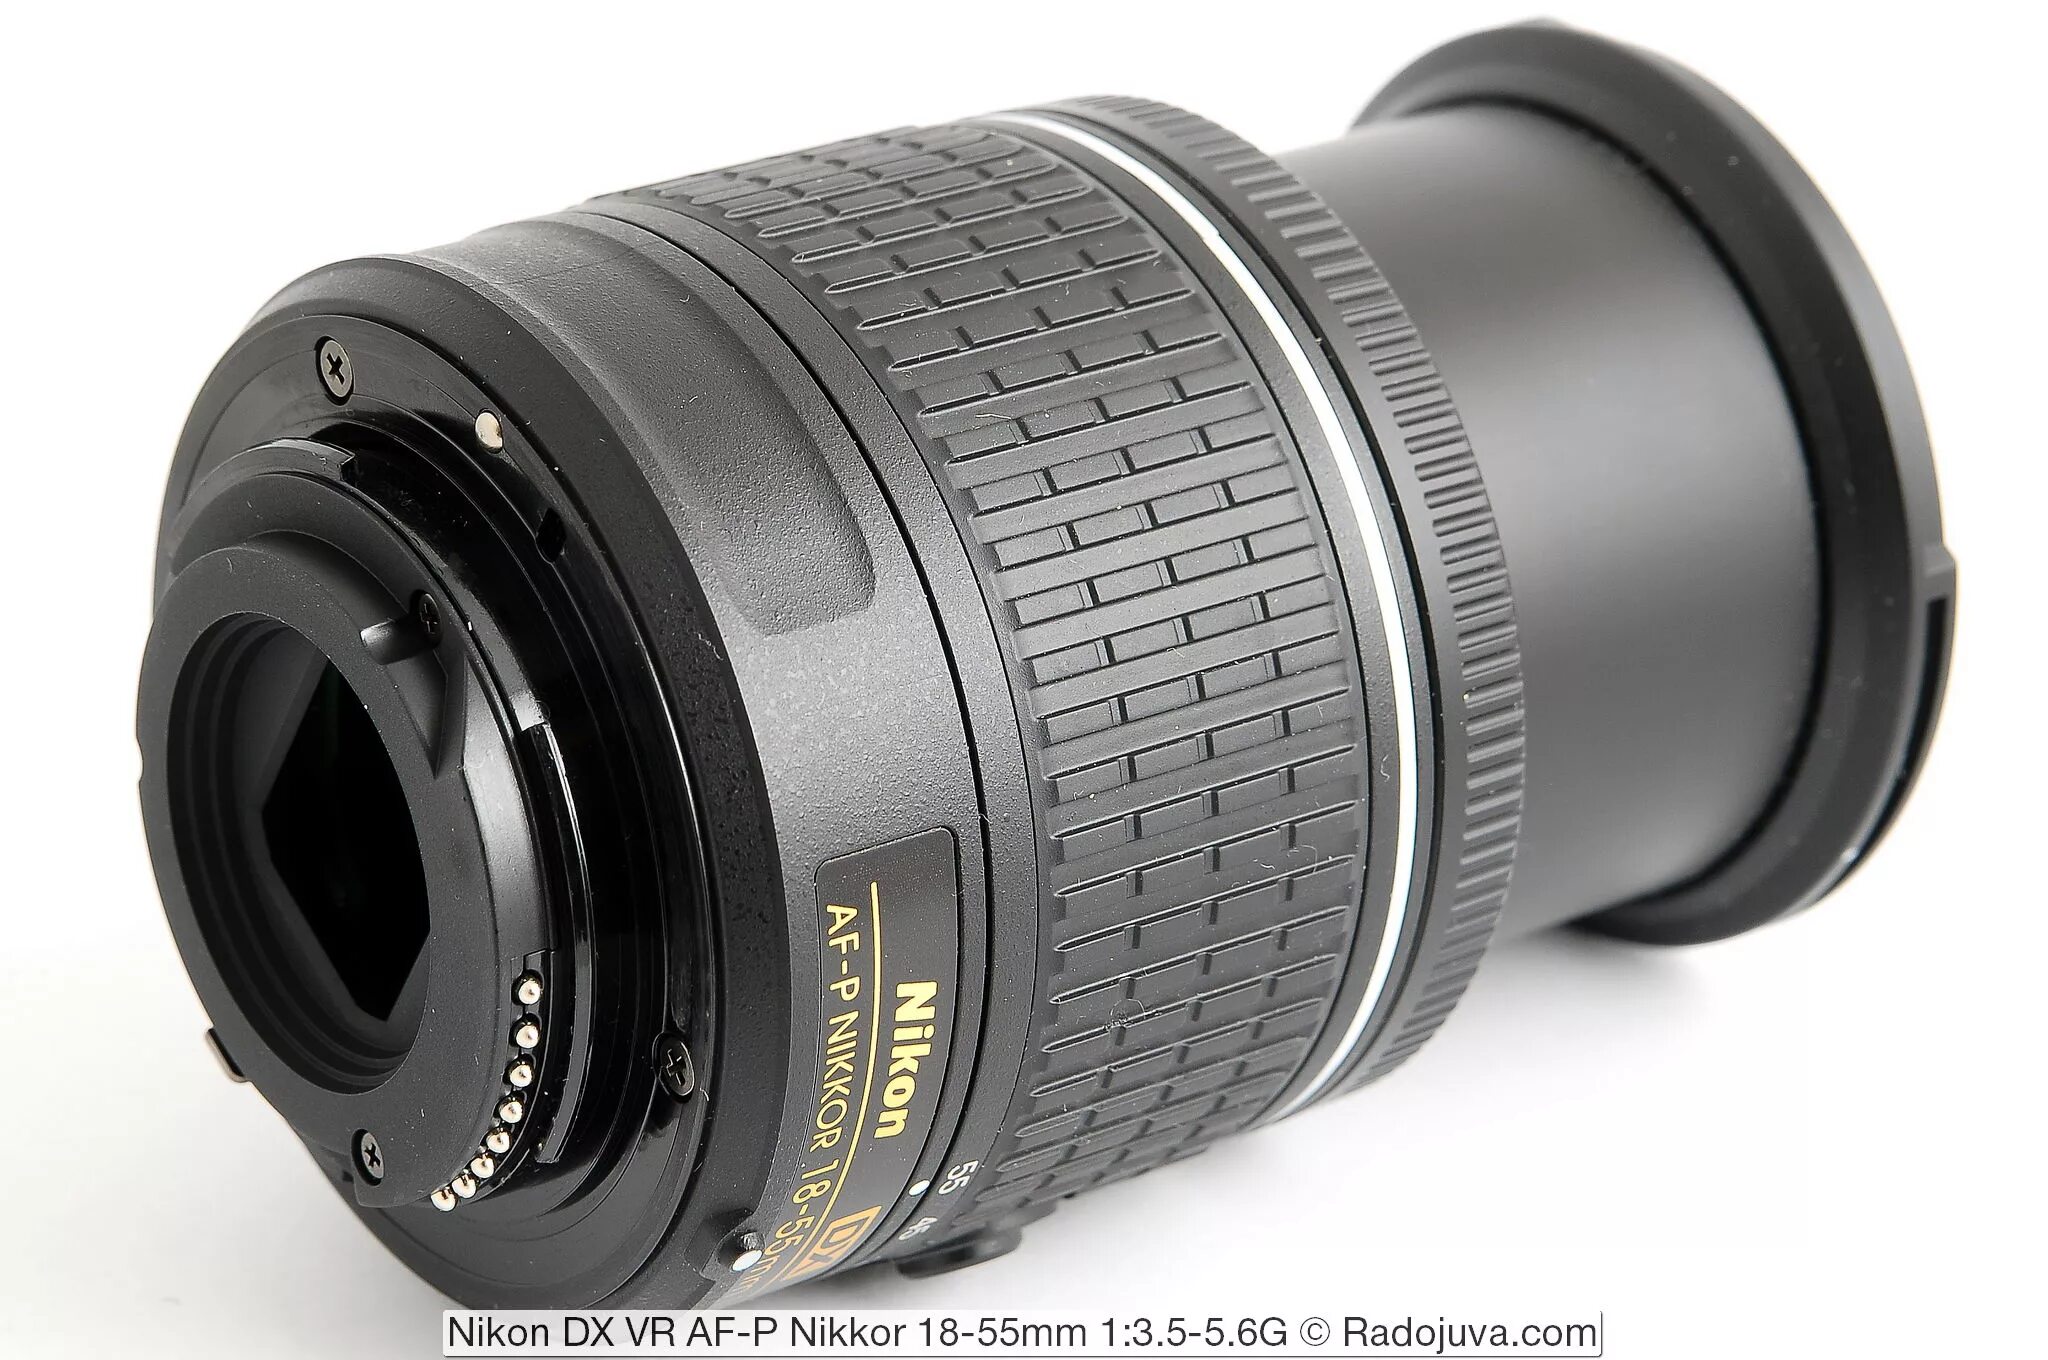 Nikkor 18 55mm vr. Af-p DX Nikkor 18-55mm f/3.5-5.6g VR. Nikon DX VR af-p Nikkor 18-55mm 1 3.5-5.6g. Nikon 18-55mm f/3.5-5.6g af-s VR DX. Nikon DX af s Nikkor 18 55mm.